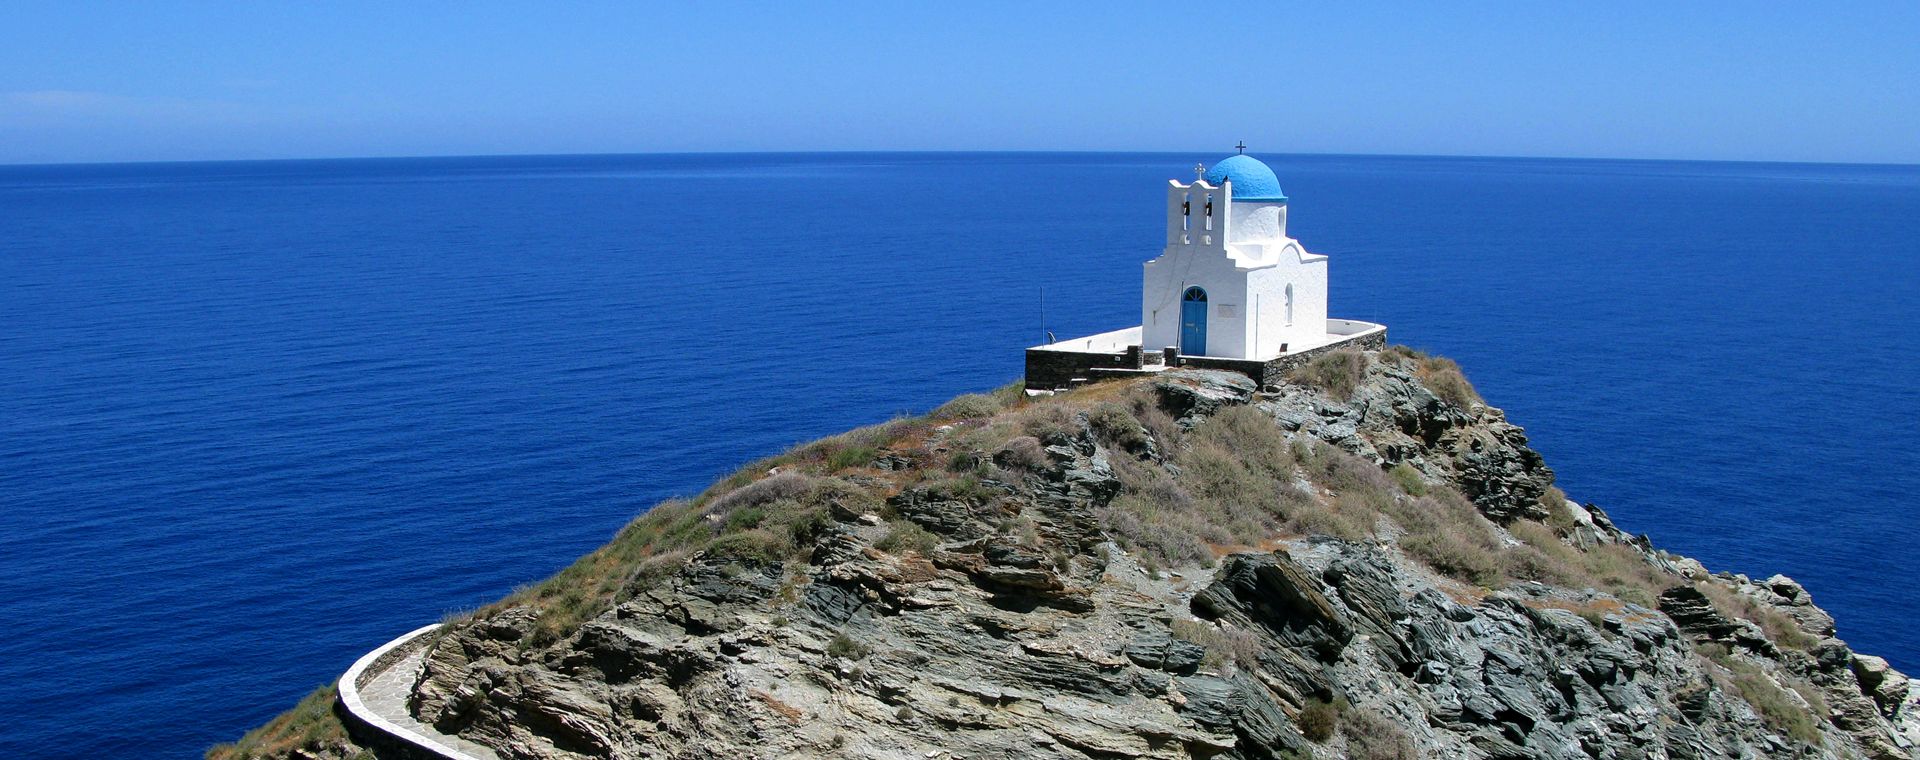 Chapelle d'Eftamartyres, symbole de l'île de Sifnos dans les Cyclades